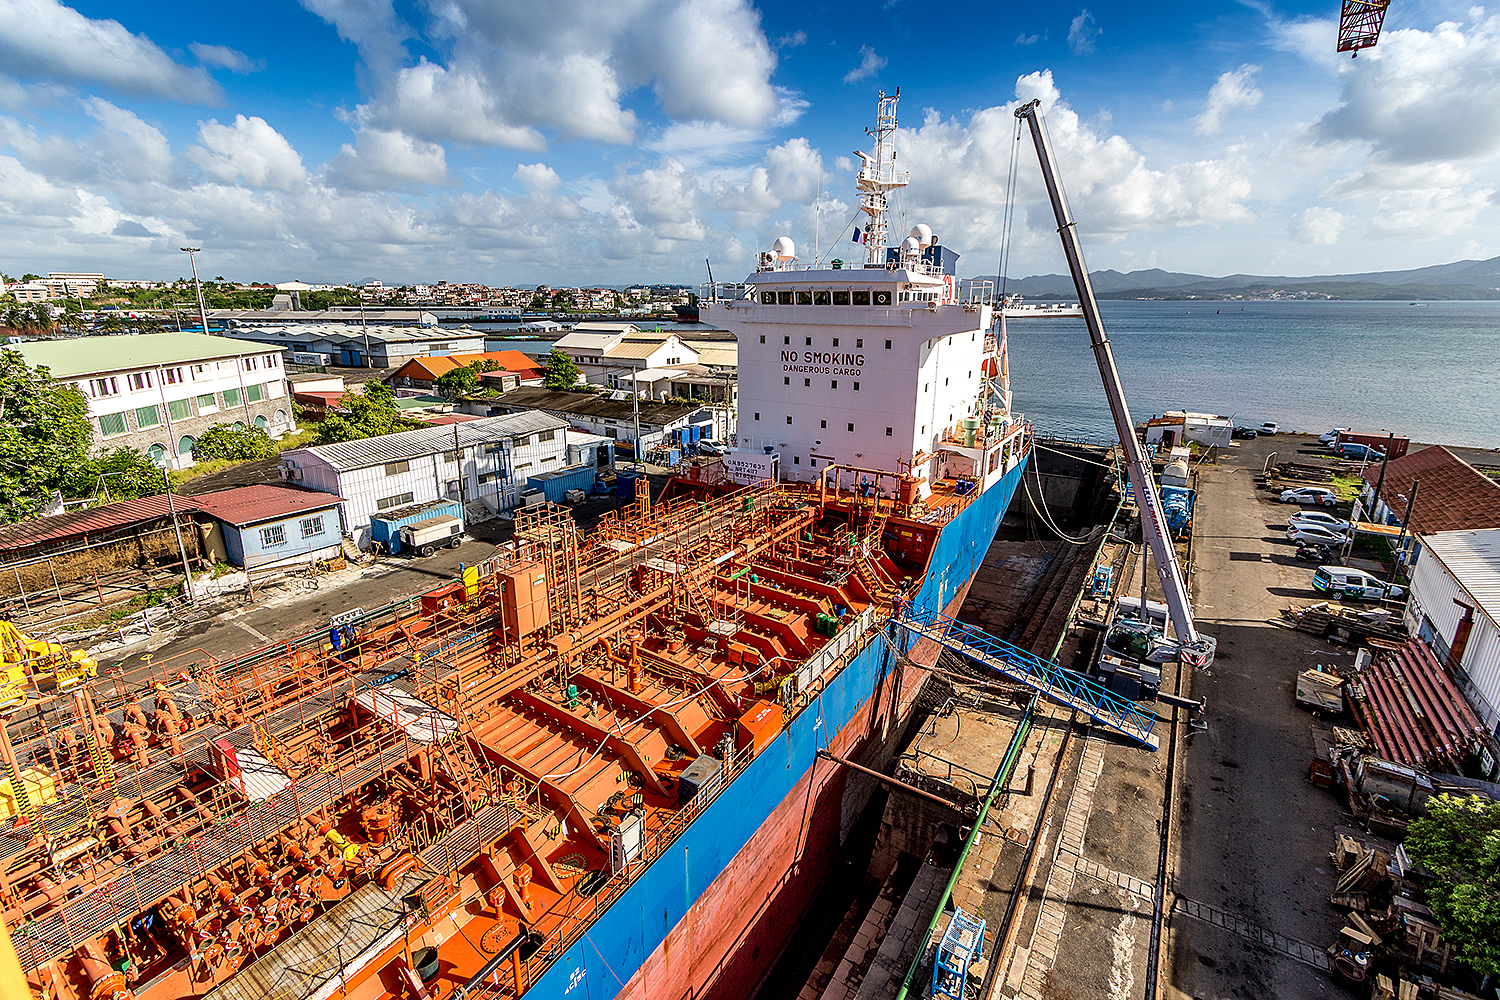     Le grand port maritime de Martinique impacté par la crise sanitaire du Covid-19

